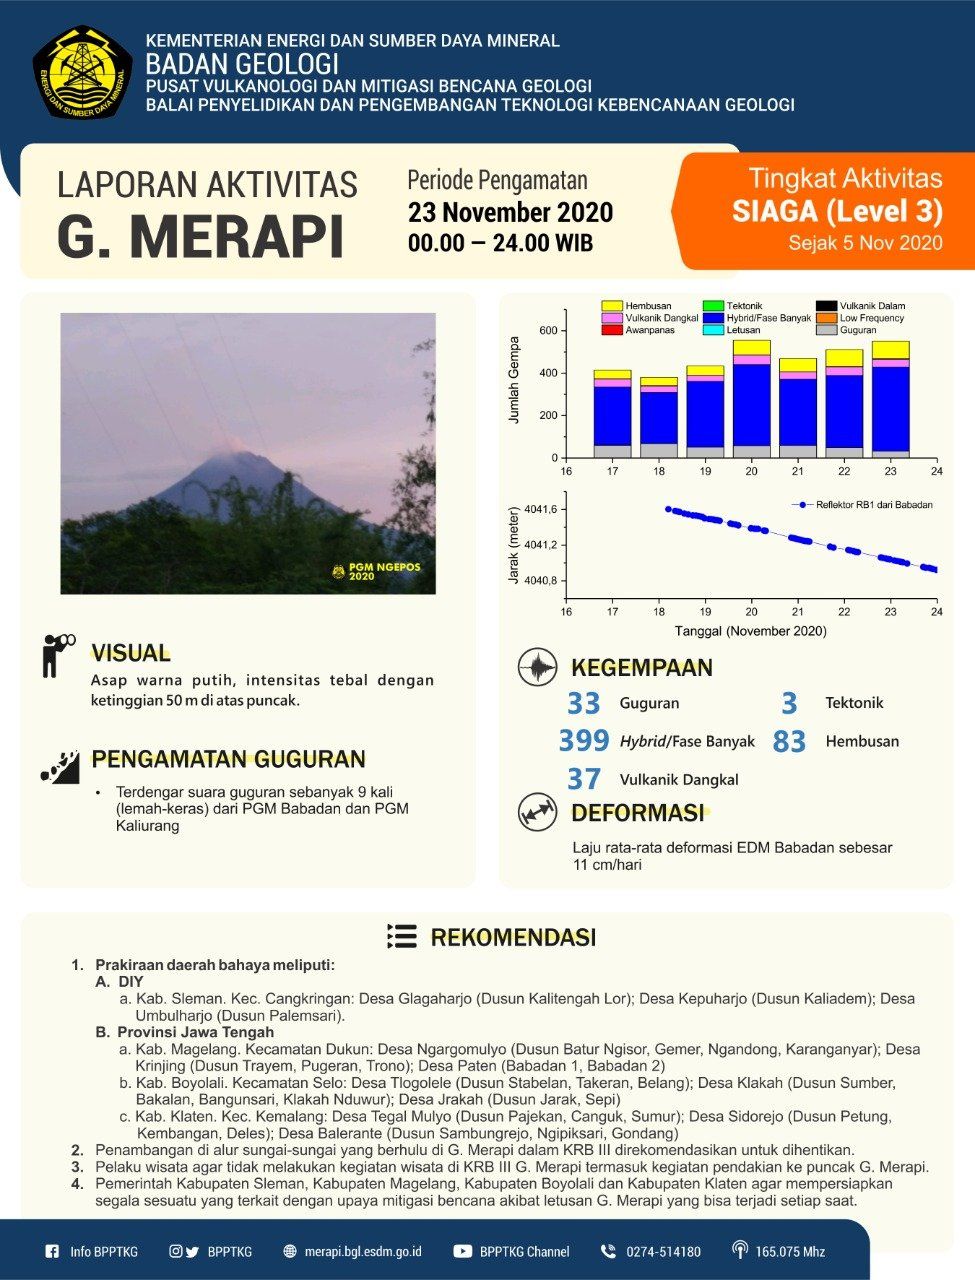 Informasi kegempaan dari Gunung Merapi di akun twitter resmi @BPPTKG